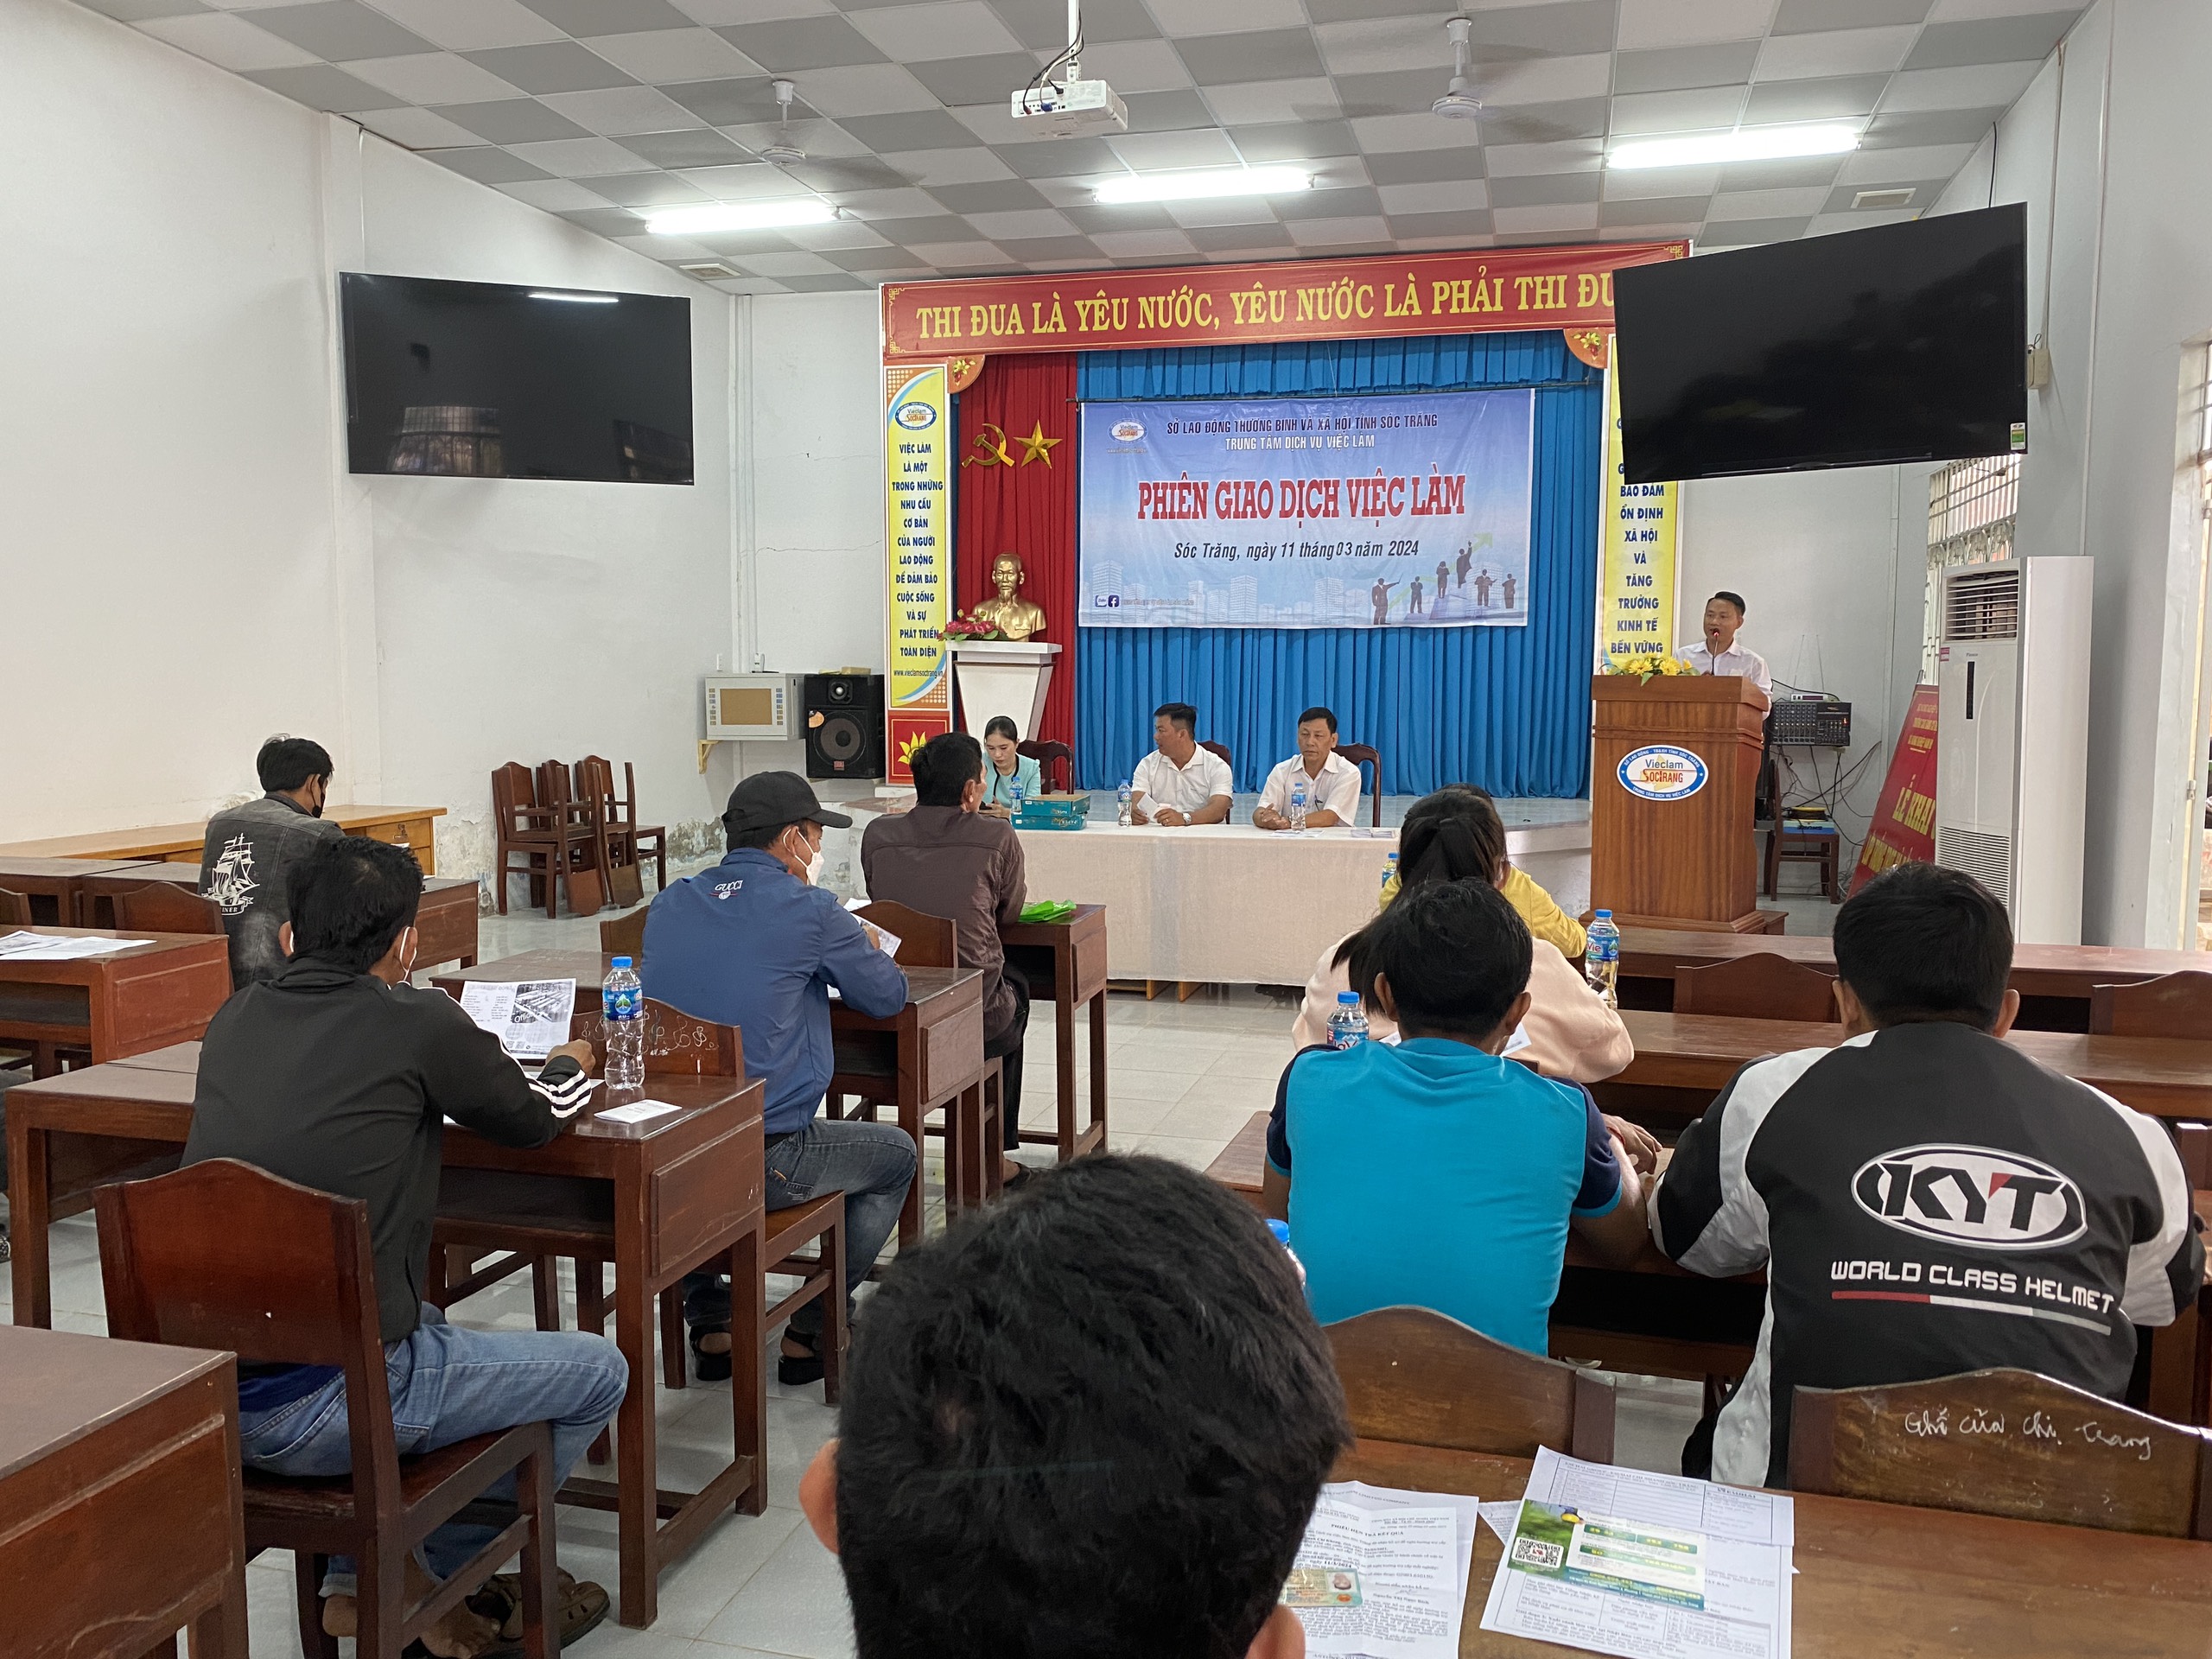 Mời lao động tham dự Phiên giao dịch việc làm được tổ chức tại các xã thuộc huyện Long Phú diễn ra từ ngày 03/04/24 đến 05/04/24